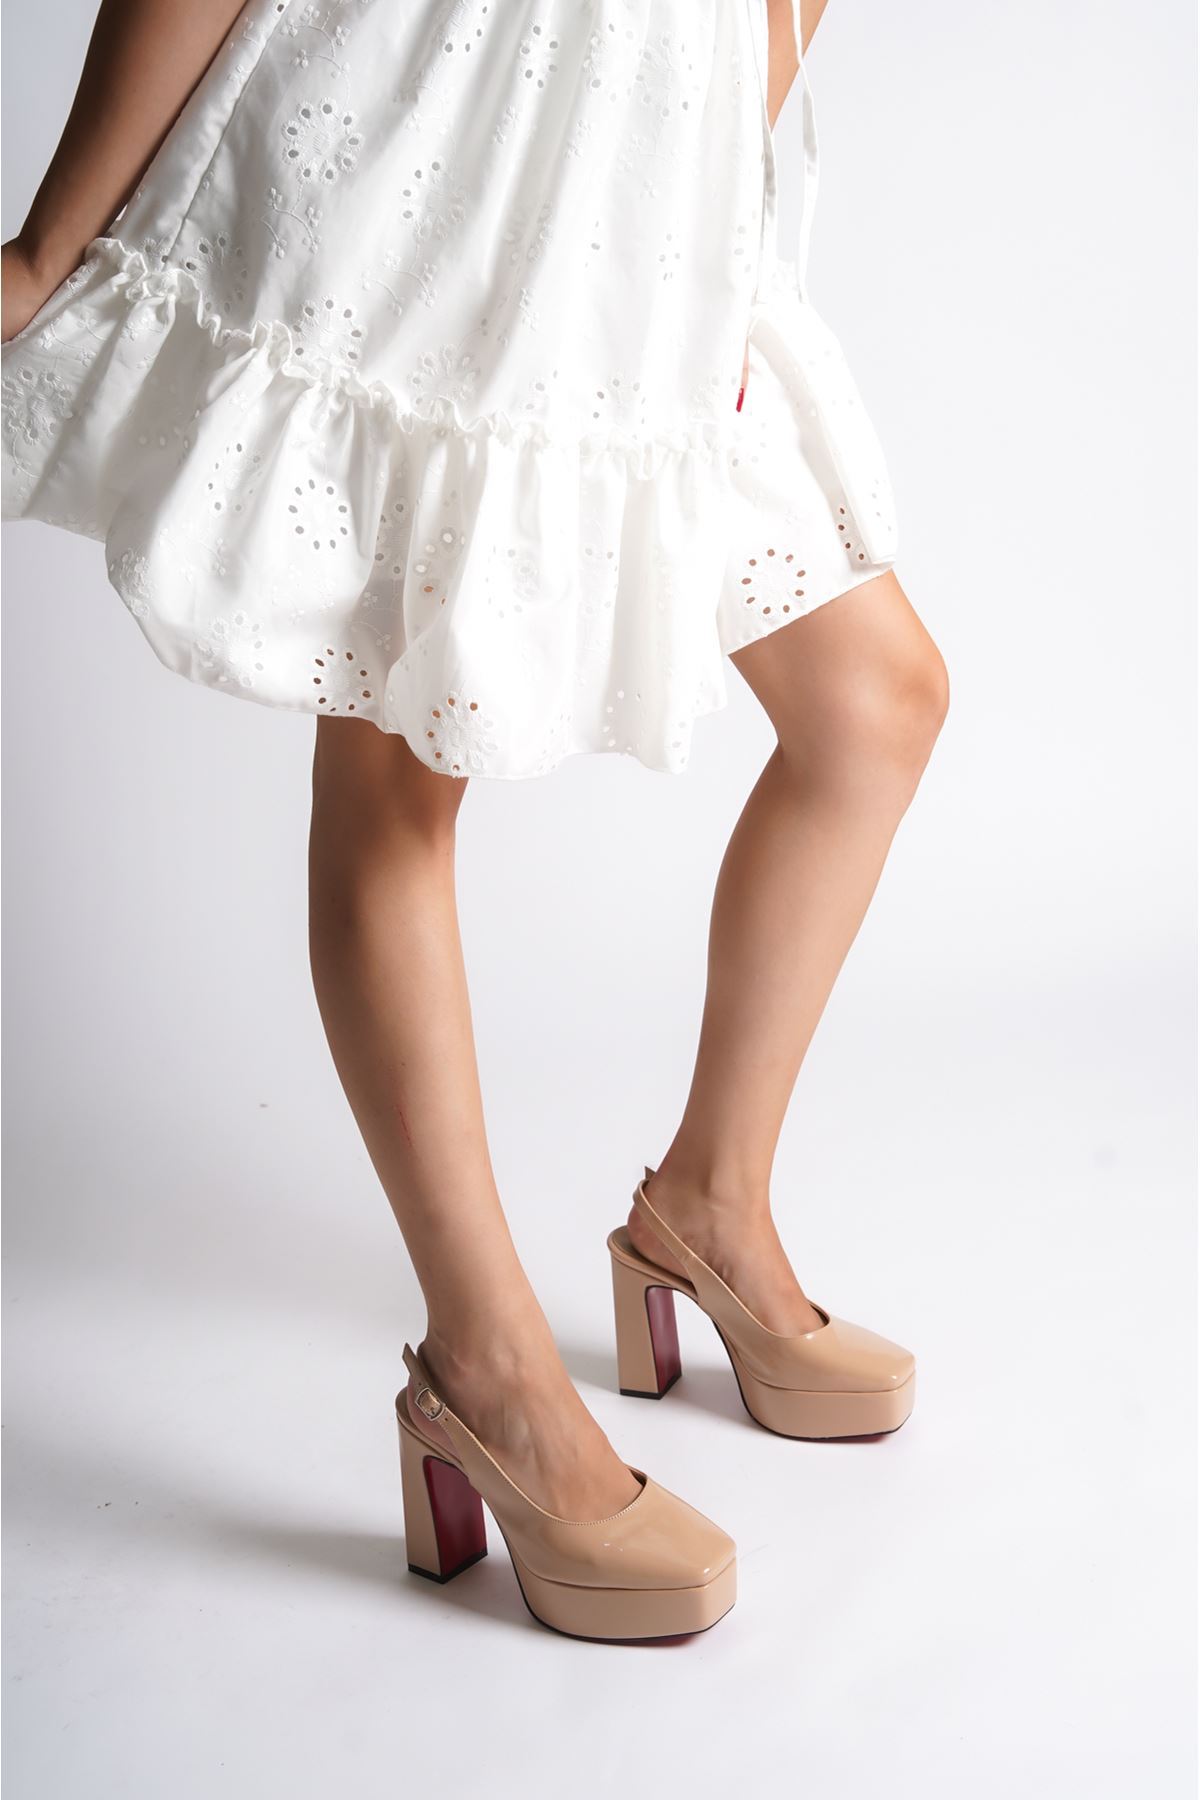 Nude Rugan Özel Tasarım Orta Topuklu Kadın Topuklu Ayakkabı Chelsea